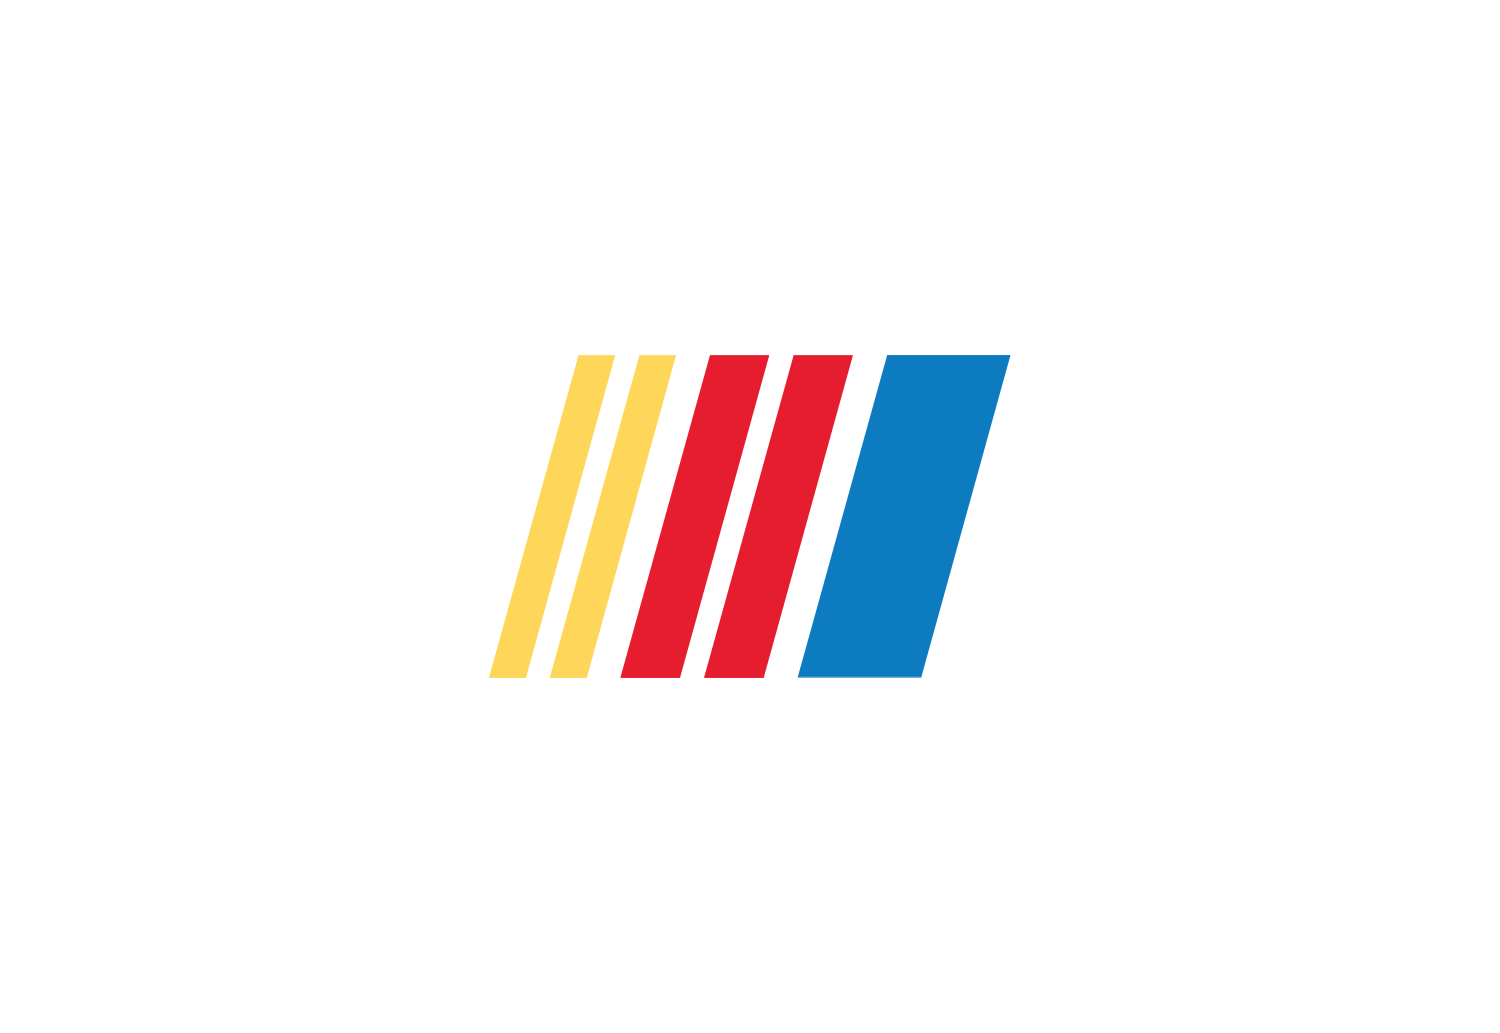 NASCAR Logo - NASCAR logo